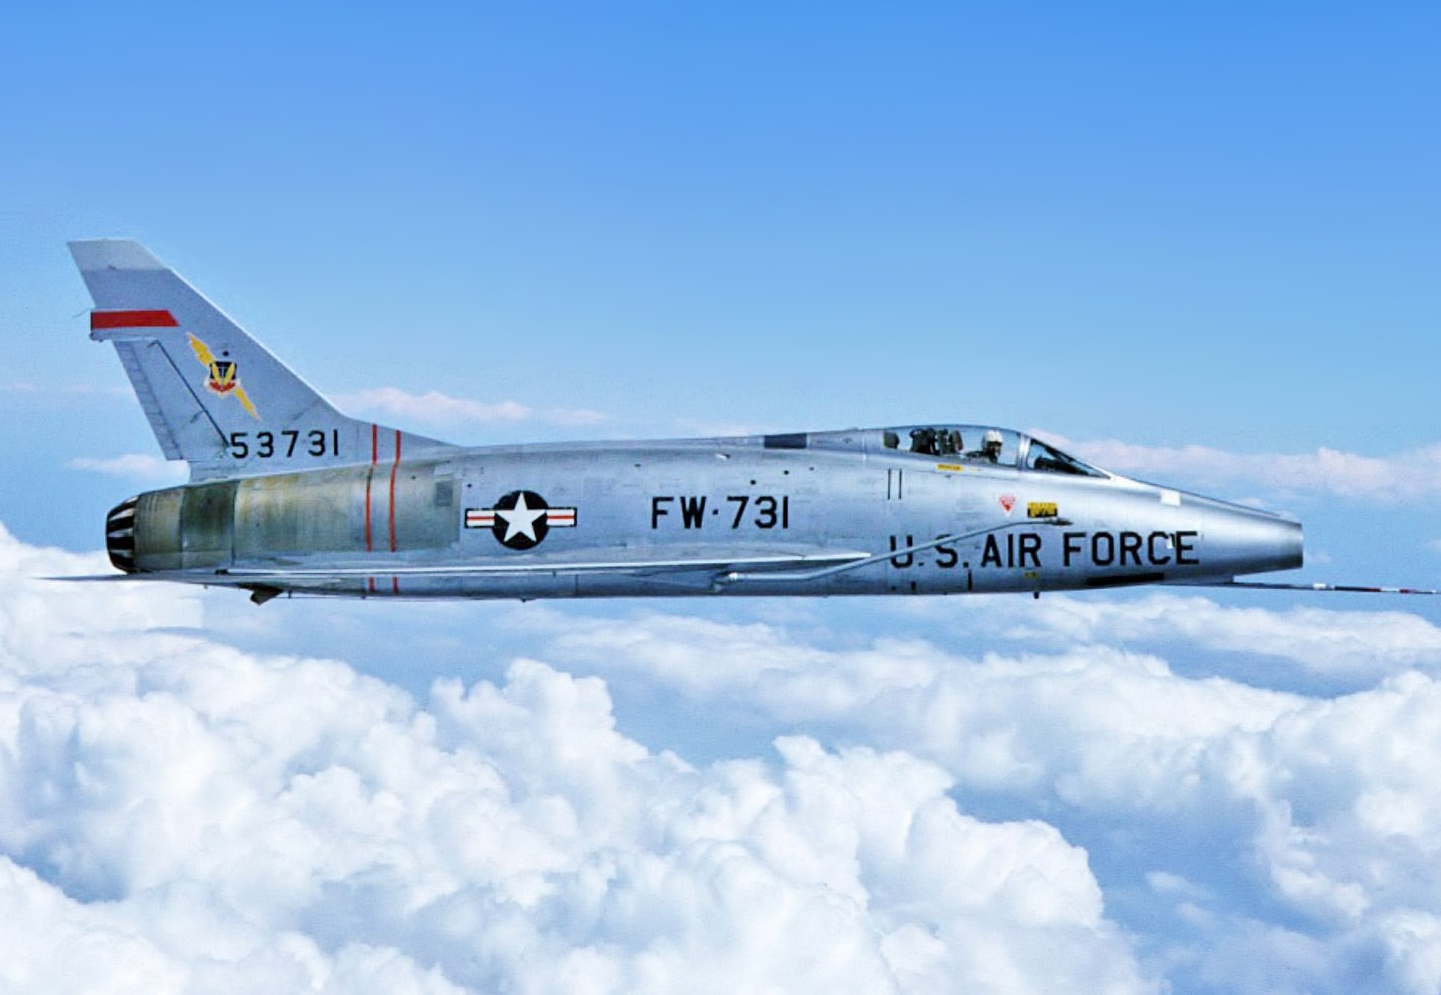 F-100 Super Sabre: Chiến đấu cơ siêu thanh đầu tiên của Mỹ là huyền thoại hay thảm họa? - Ảnh 1.